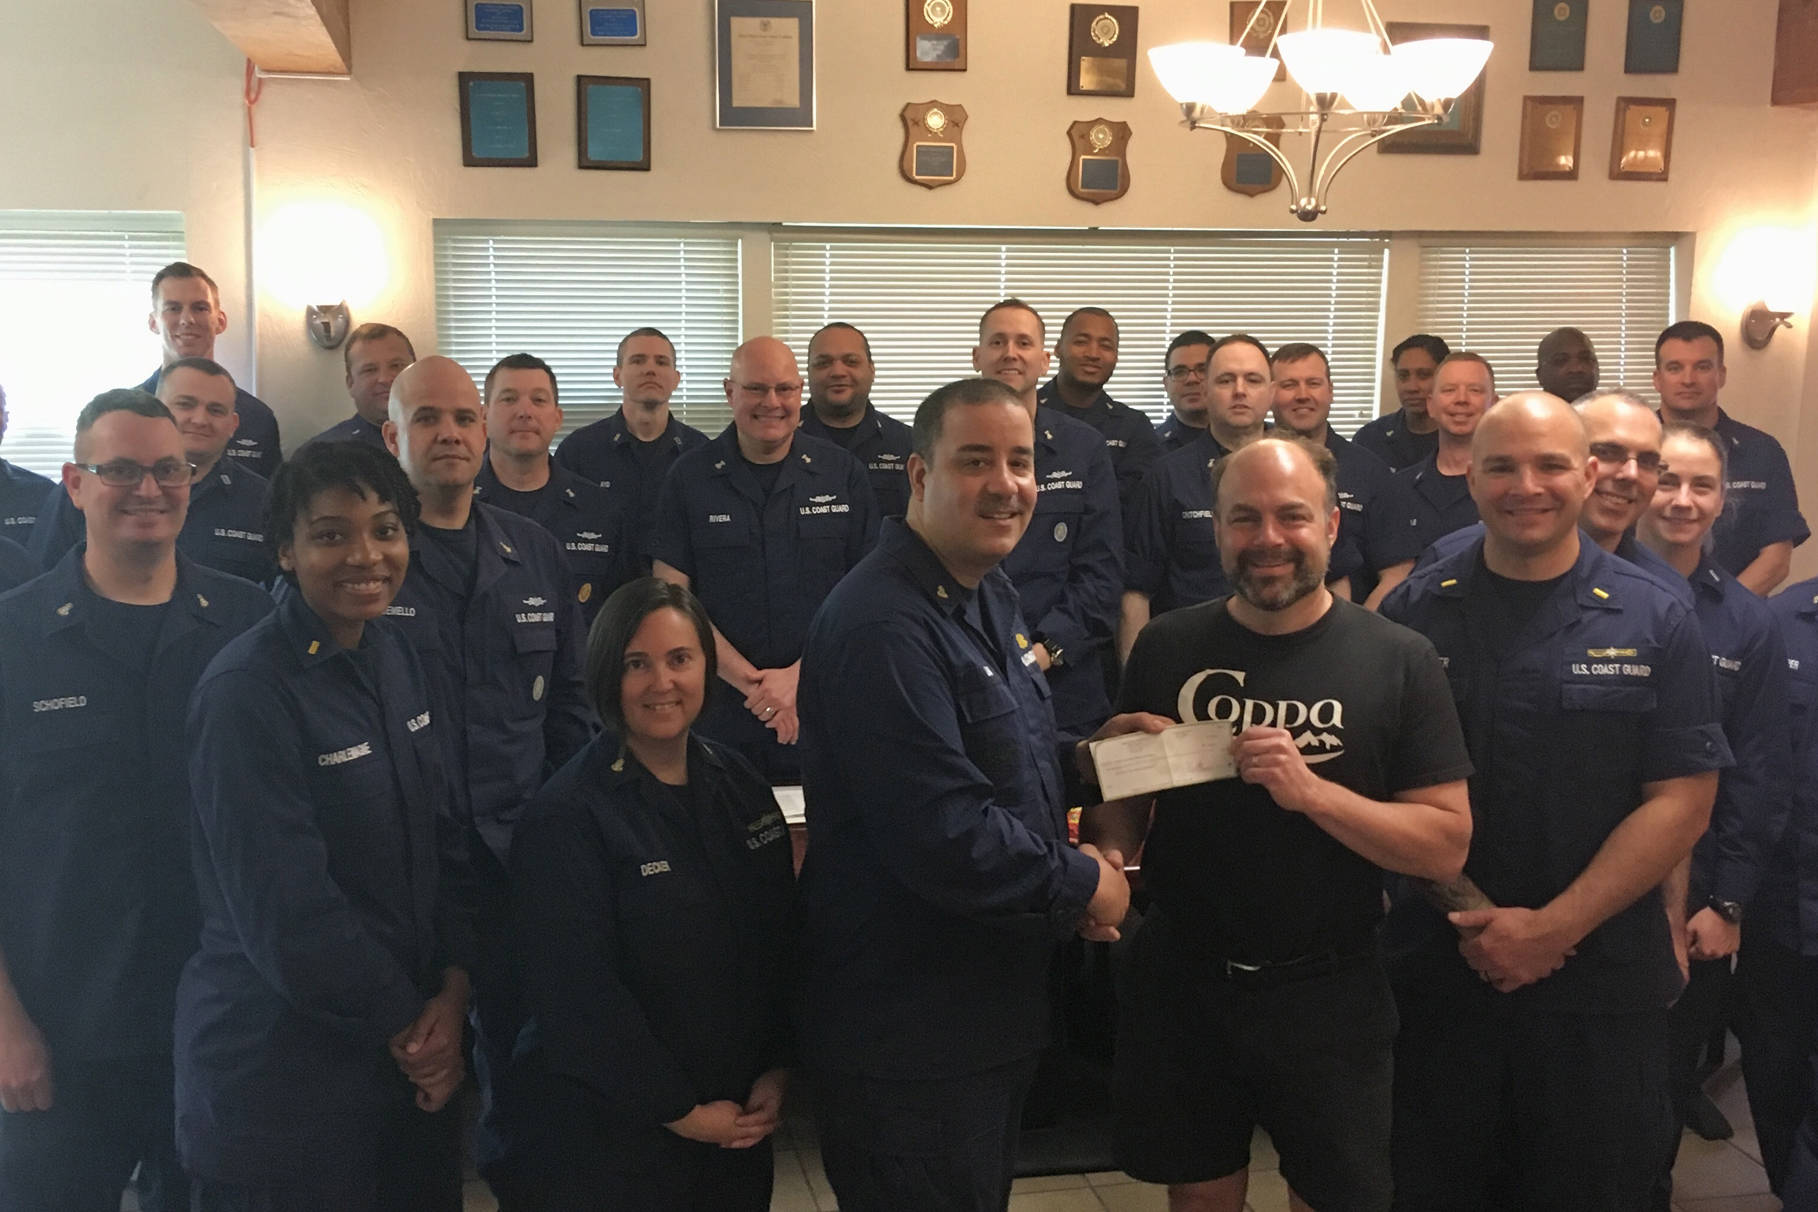 Coppa donates $500 to Coast Guard